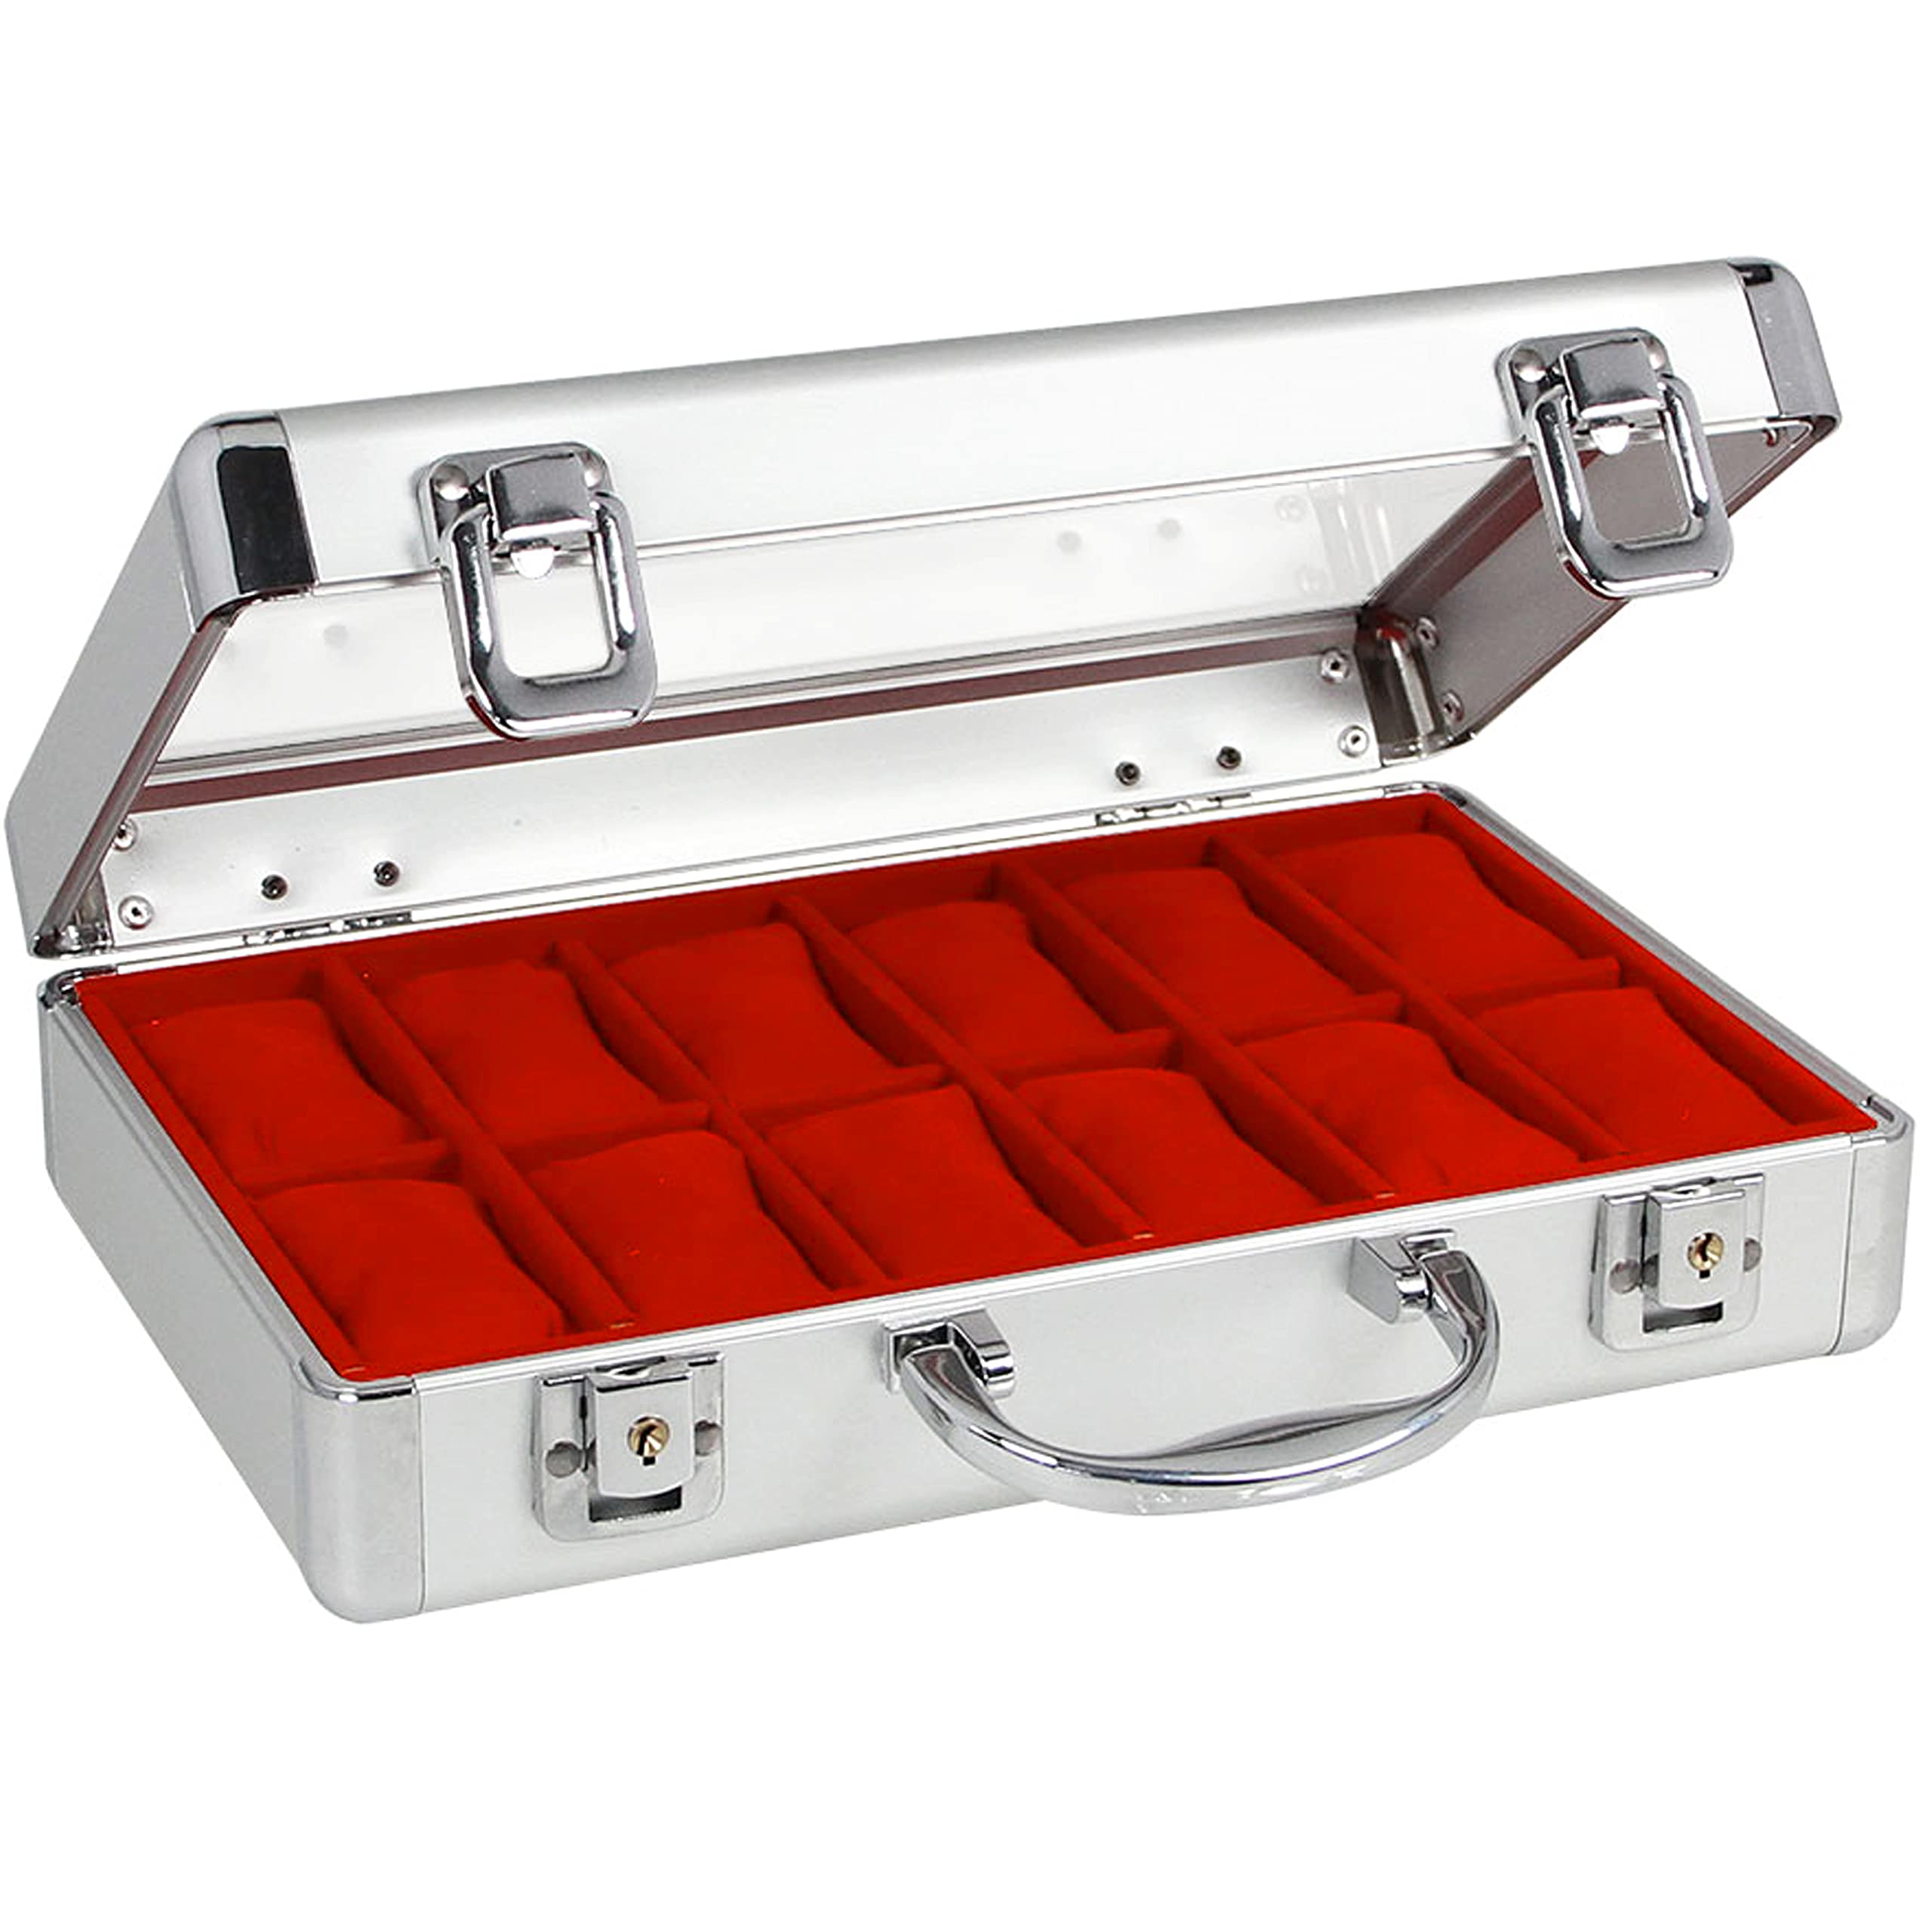 SAFE 266-1 ALU Uhrenaufbewahrungsbox Herren mit 18 Uhren-Schmuckhalter in rotem Samt - abschließbare Uhren Box mit Glasdeckel und abnehmbaren Uhrenkissen